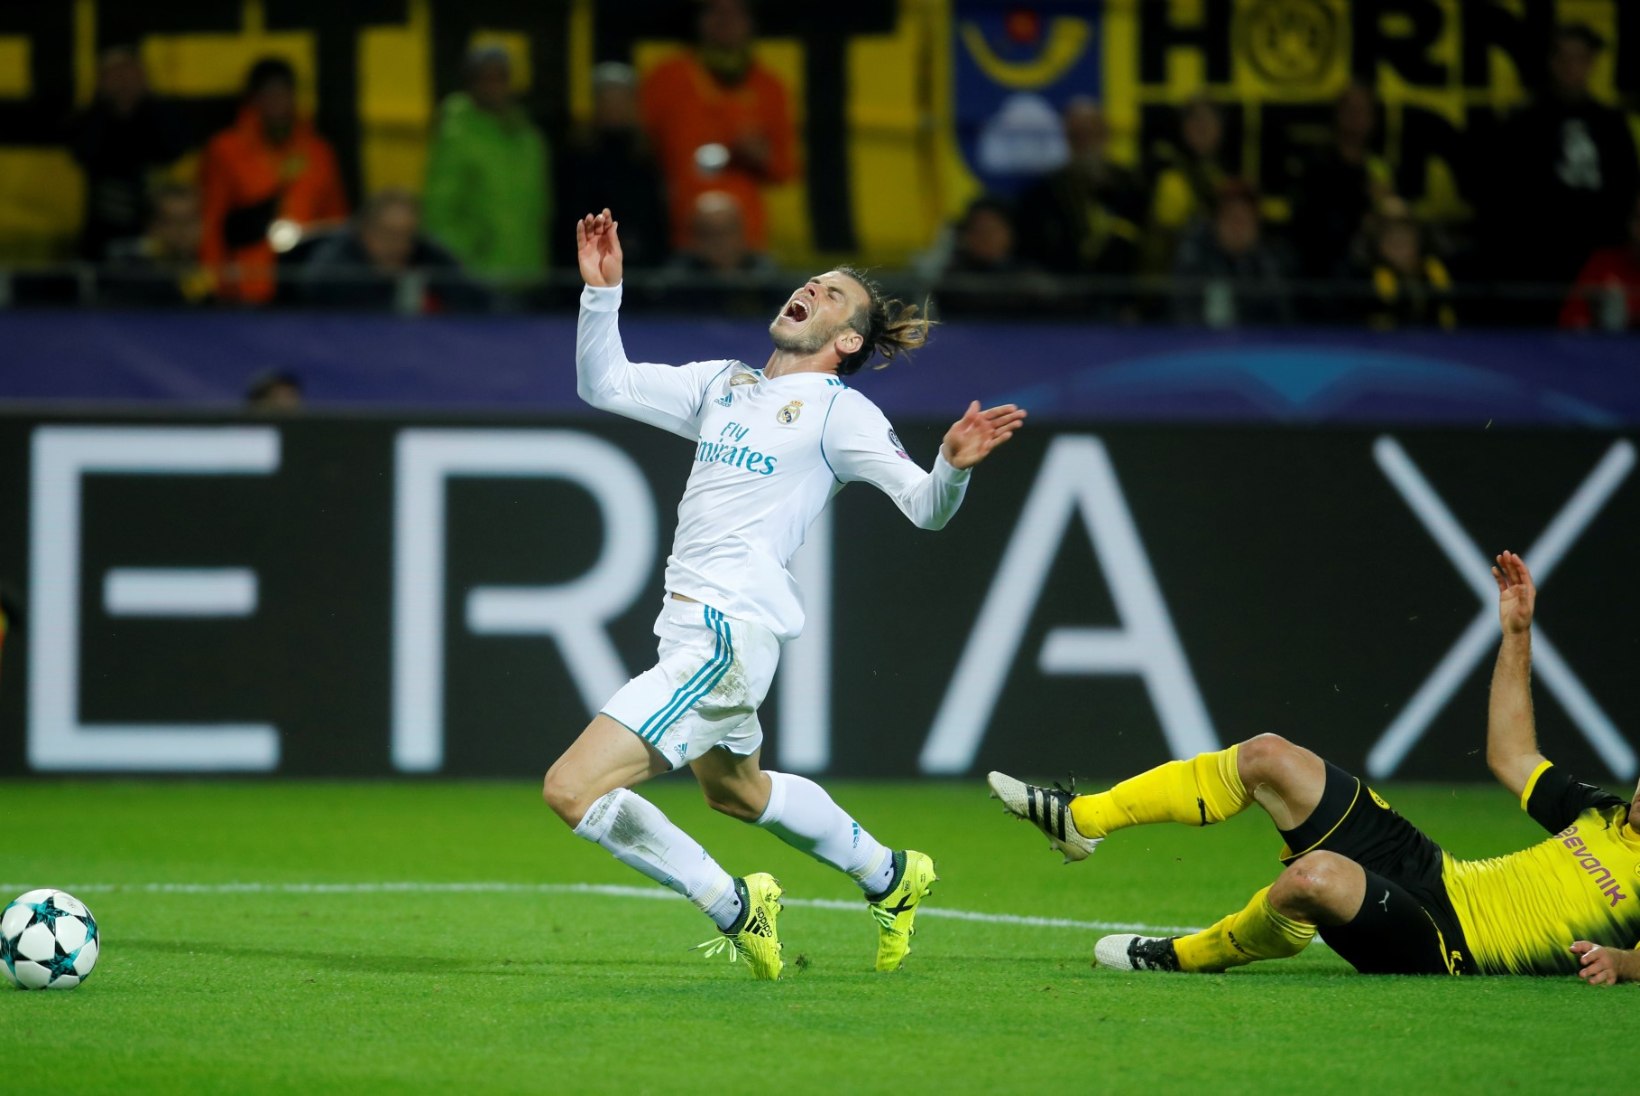 KAS TÕESTI? Madridi Real on nõus Gareth Bale'i ManU-le müüma